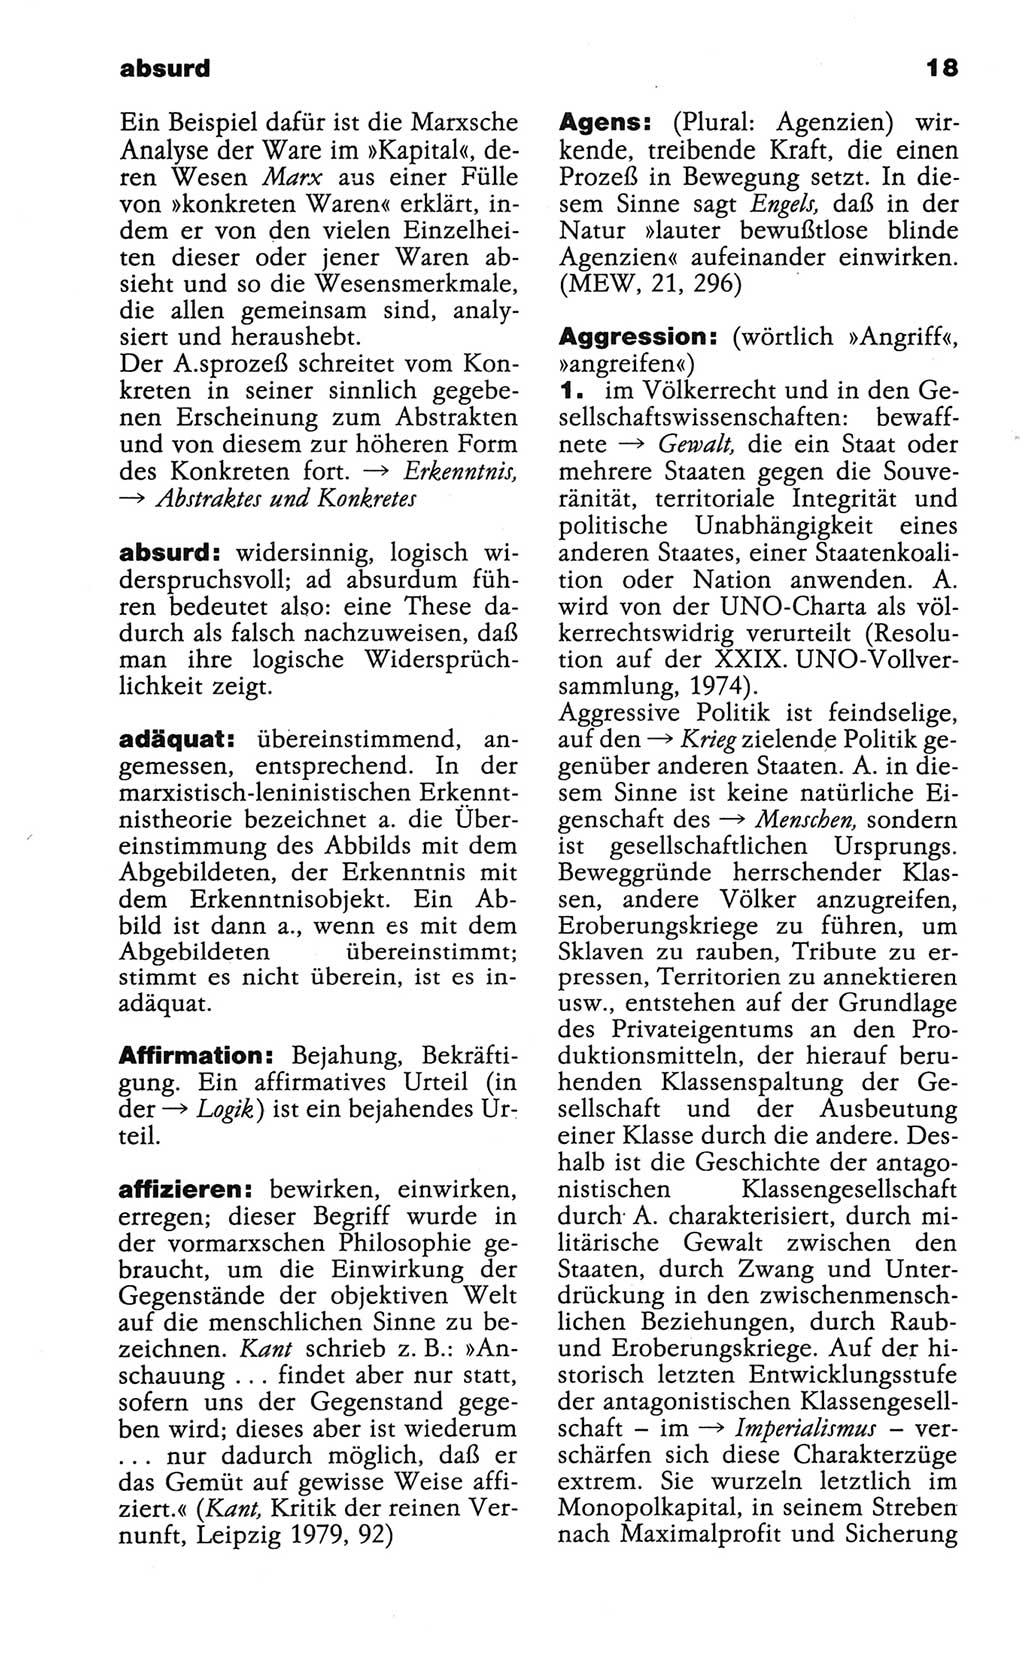 Wörterbuch der marxistisch-leninistischen Philosophie [Deutsche Demokratische Republik (DDR)] 1986, Seite 18 (Wb. ML Phil. DDR 1986, S. 18)